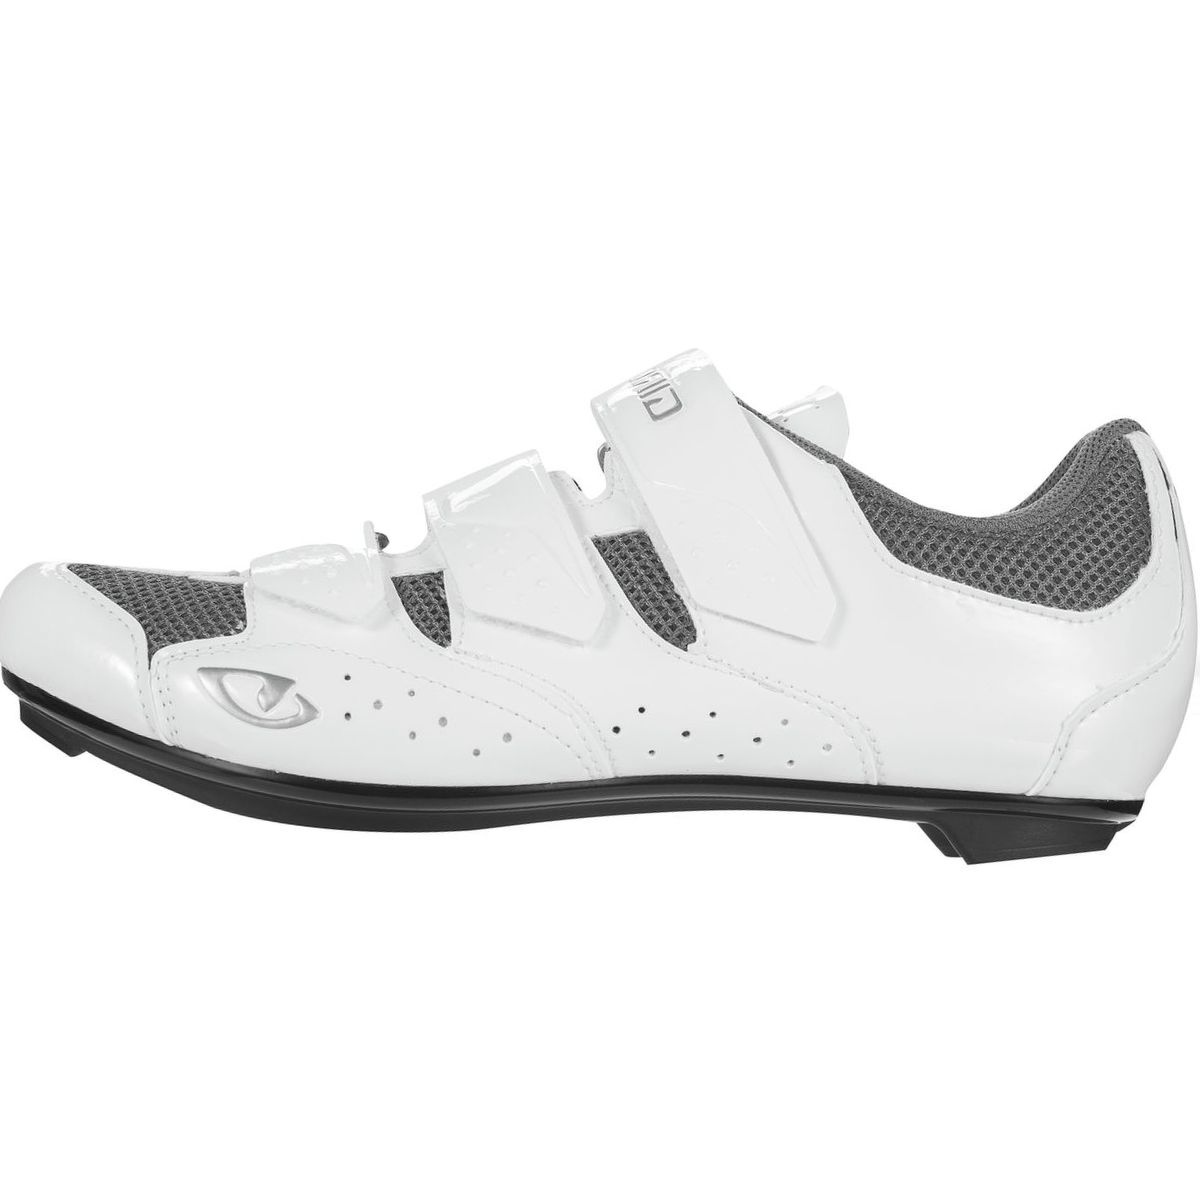 Giro Techne Cycling Shoe - Women's